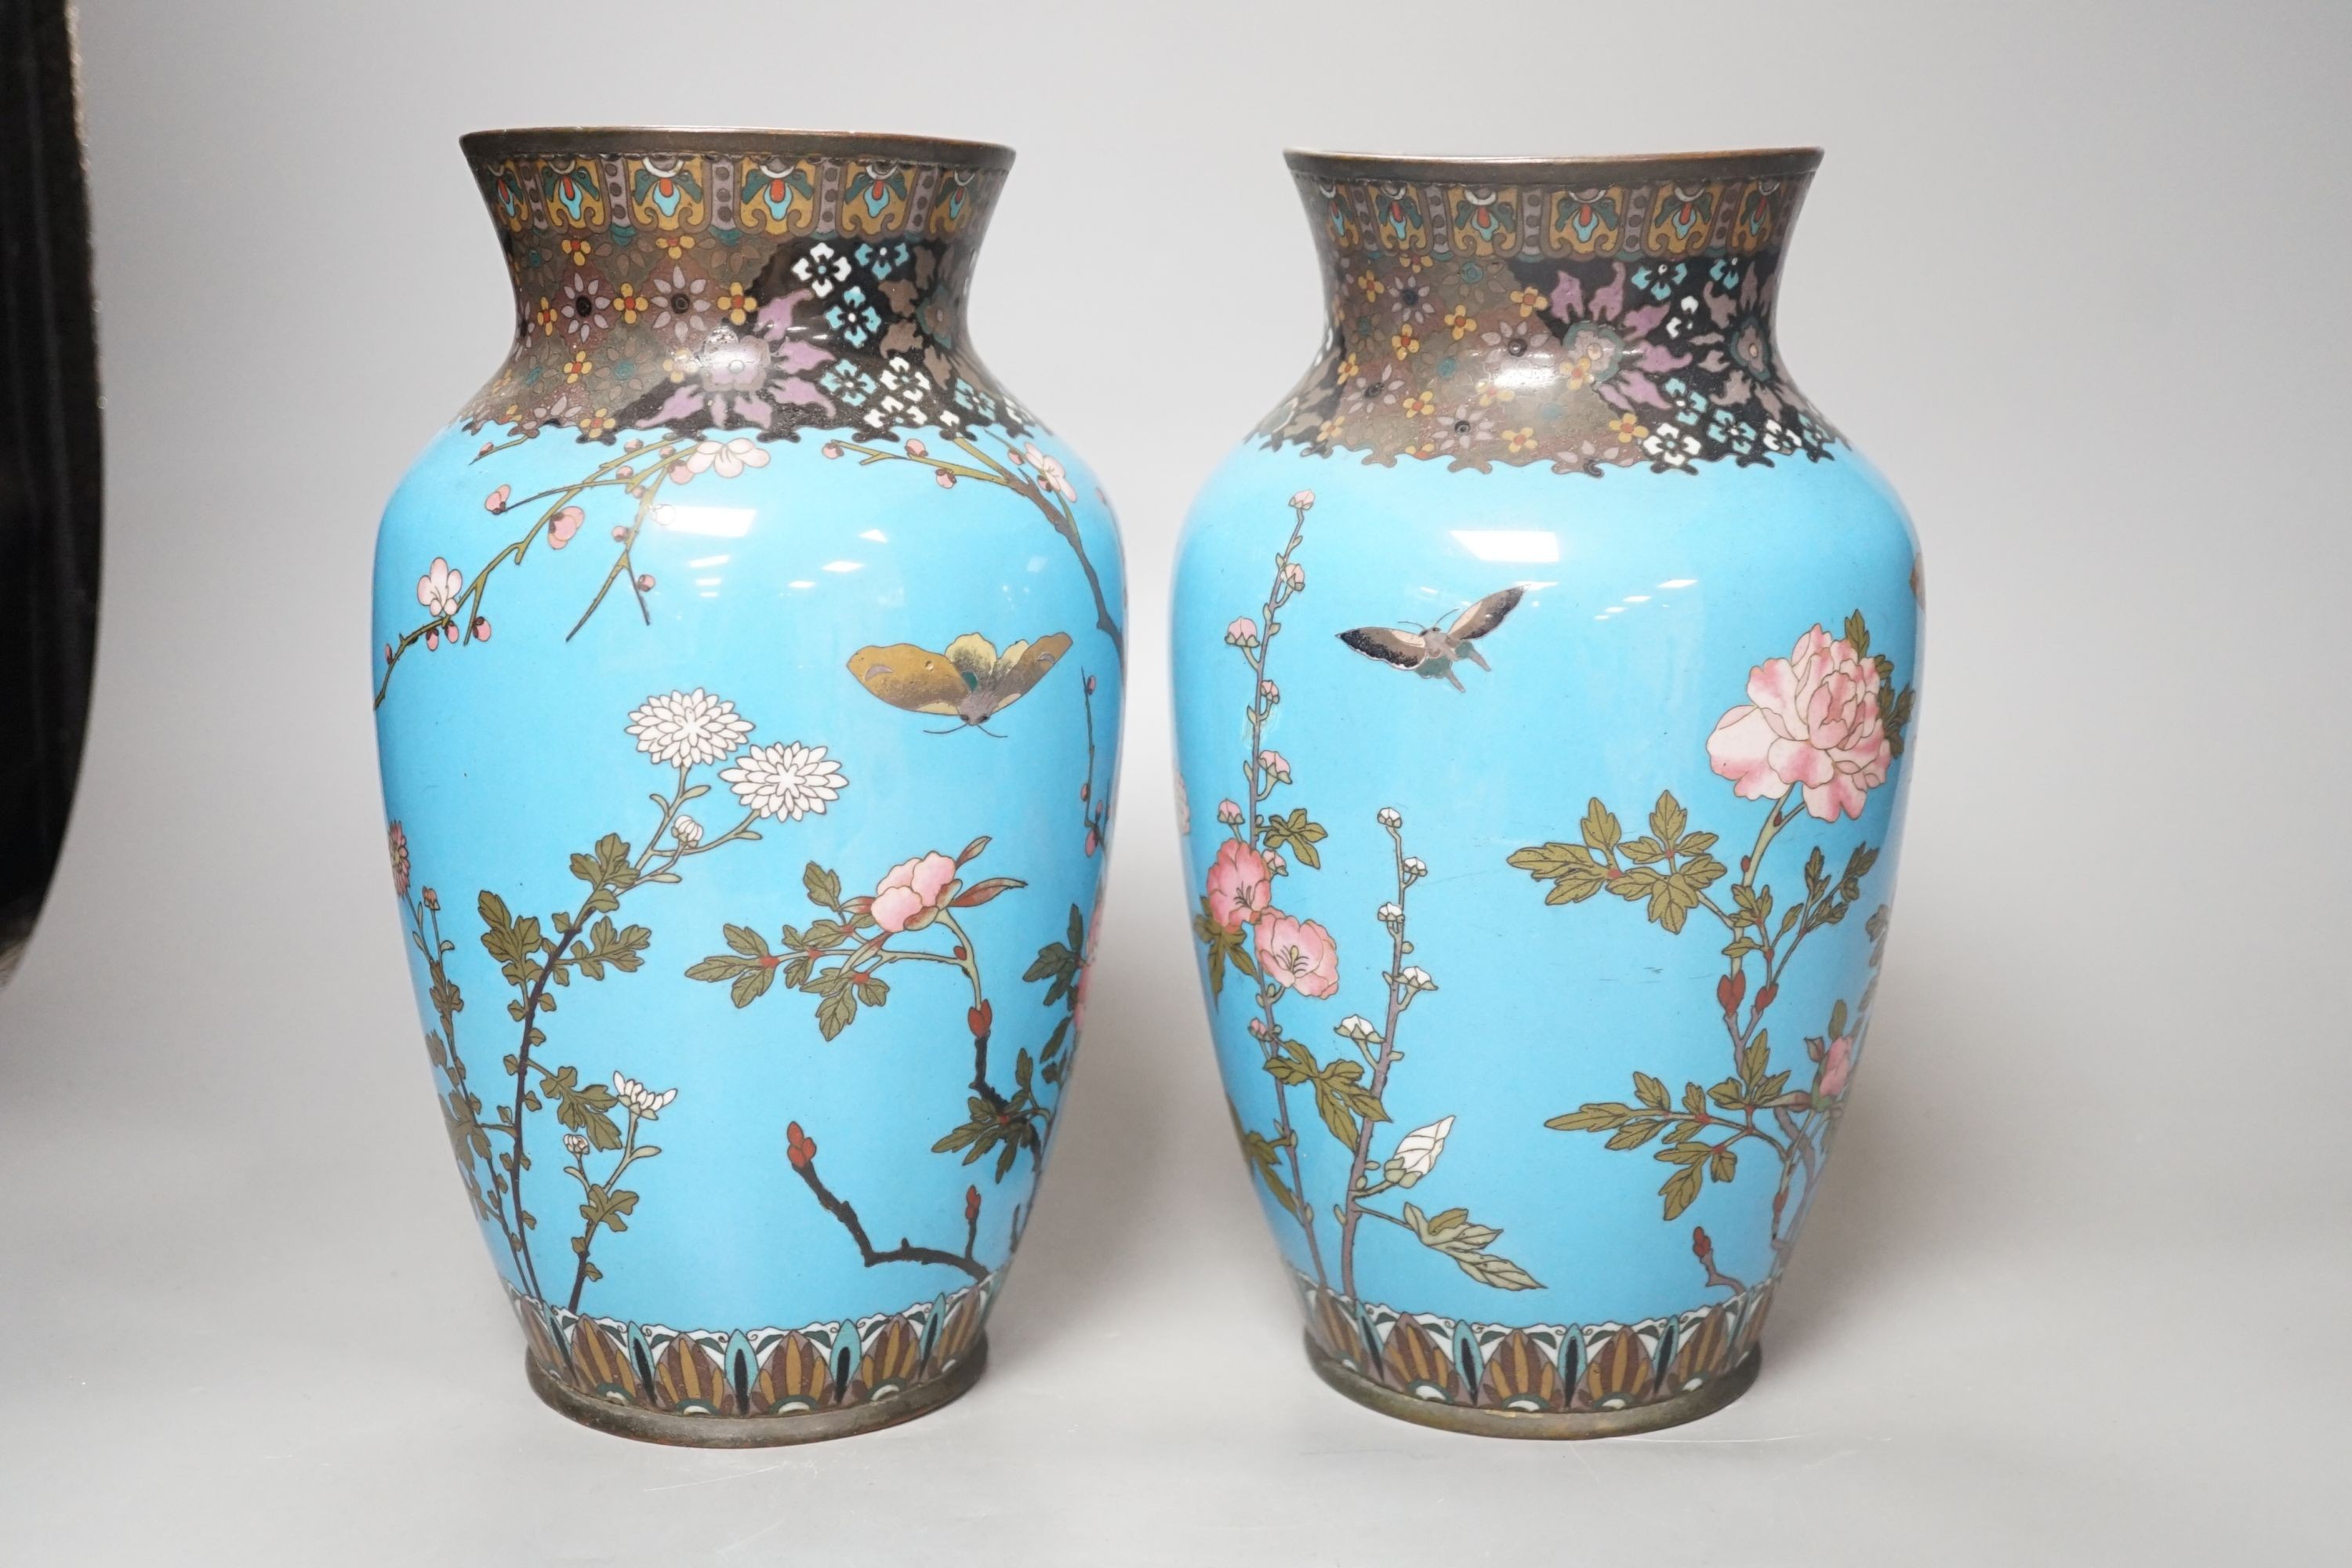 A pair of Japanese blue cloisonné enamel floral vases - 25cm tall